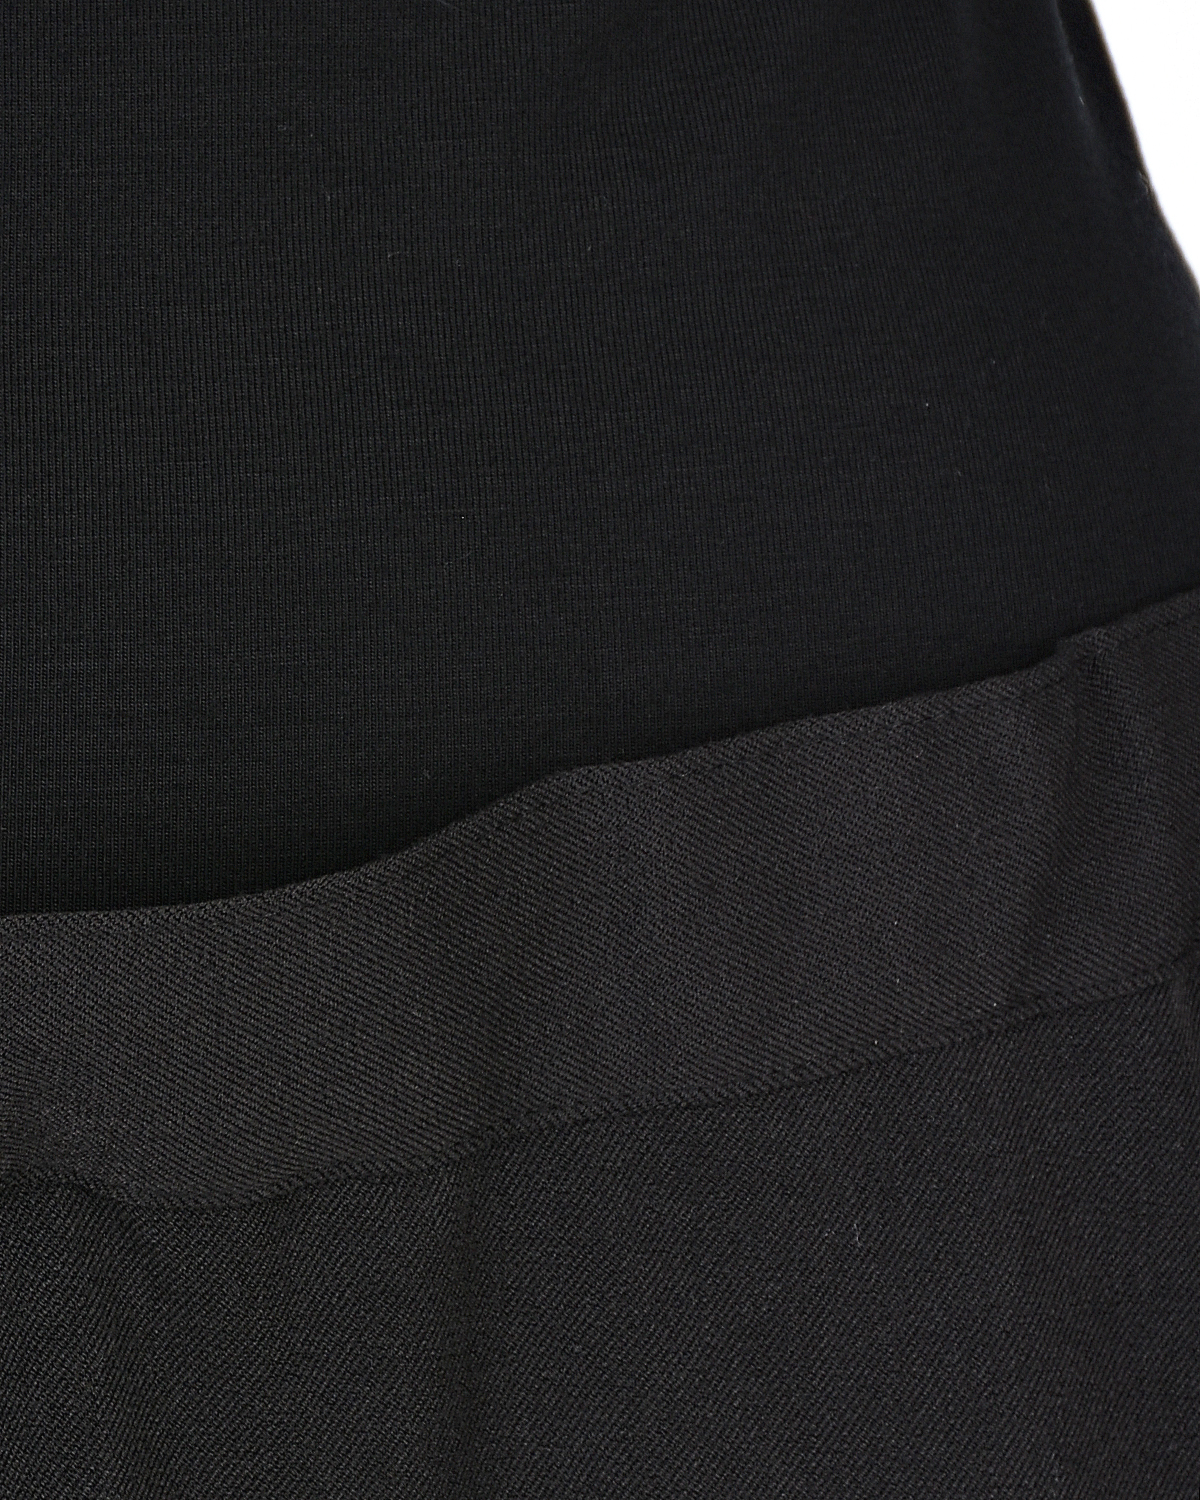 Черная юбка-миди для беременных Cedric Pietro Brunelli - фото 6